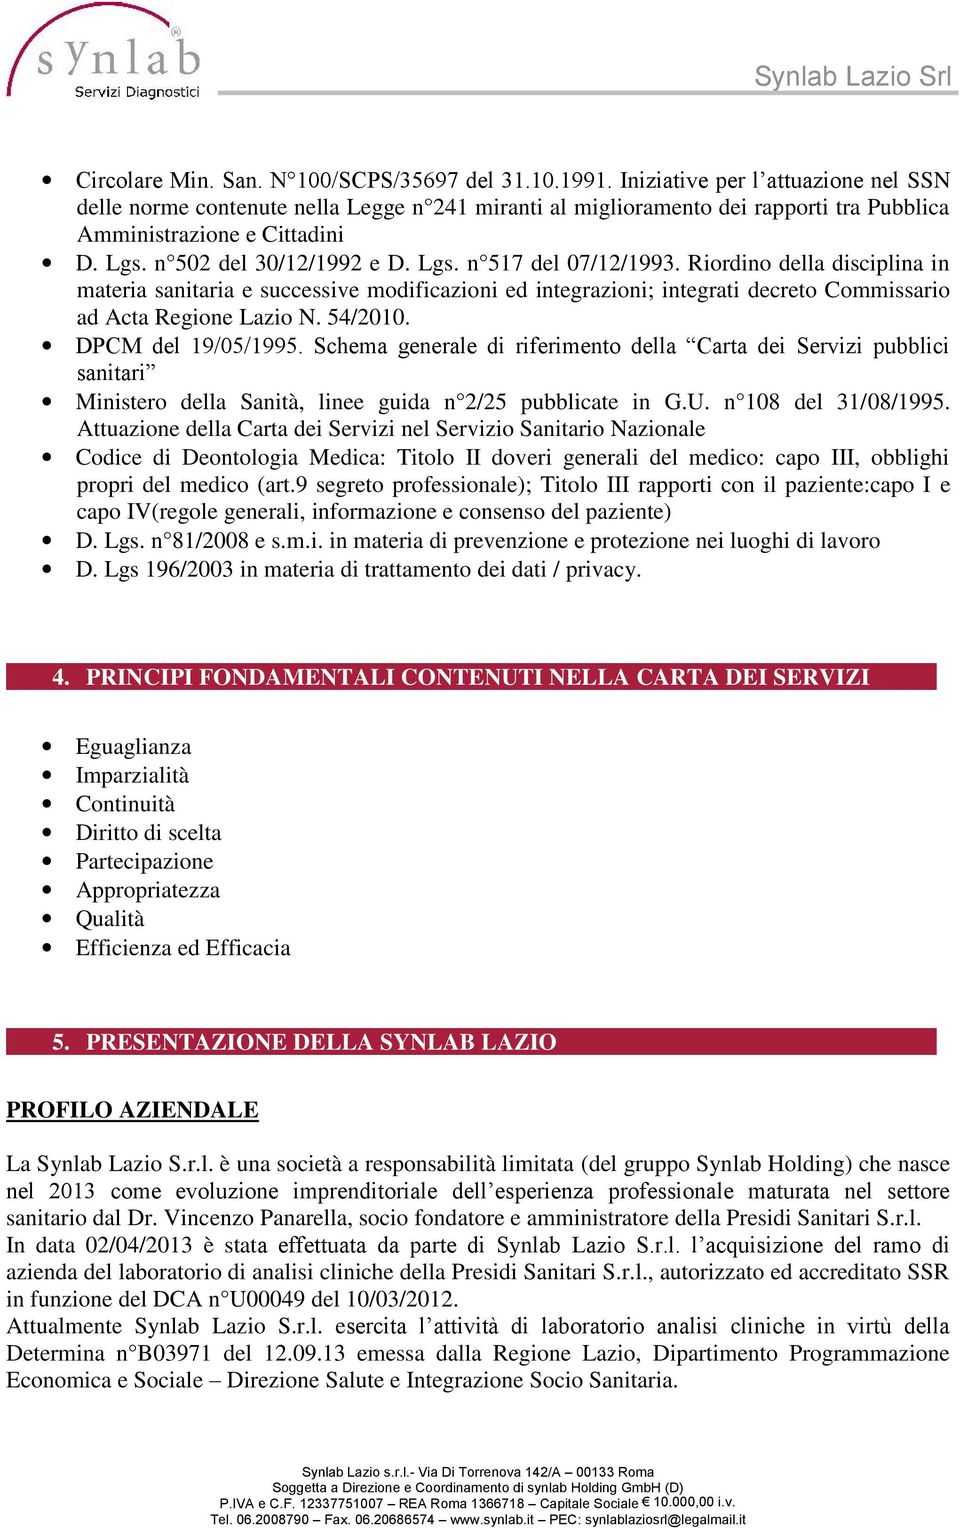 Riordino della disciplina in materia sanitaria e successive modificazioni ed integrazioni; integrati decreto Commissario ad Acta Regione Lazio N. 54/2010. DPCM del 19/05/1995.